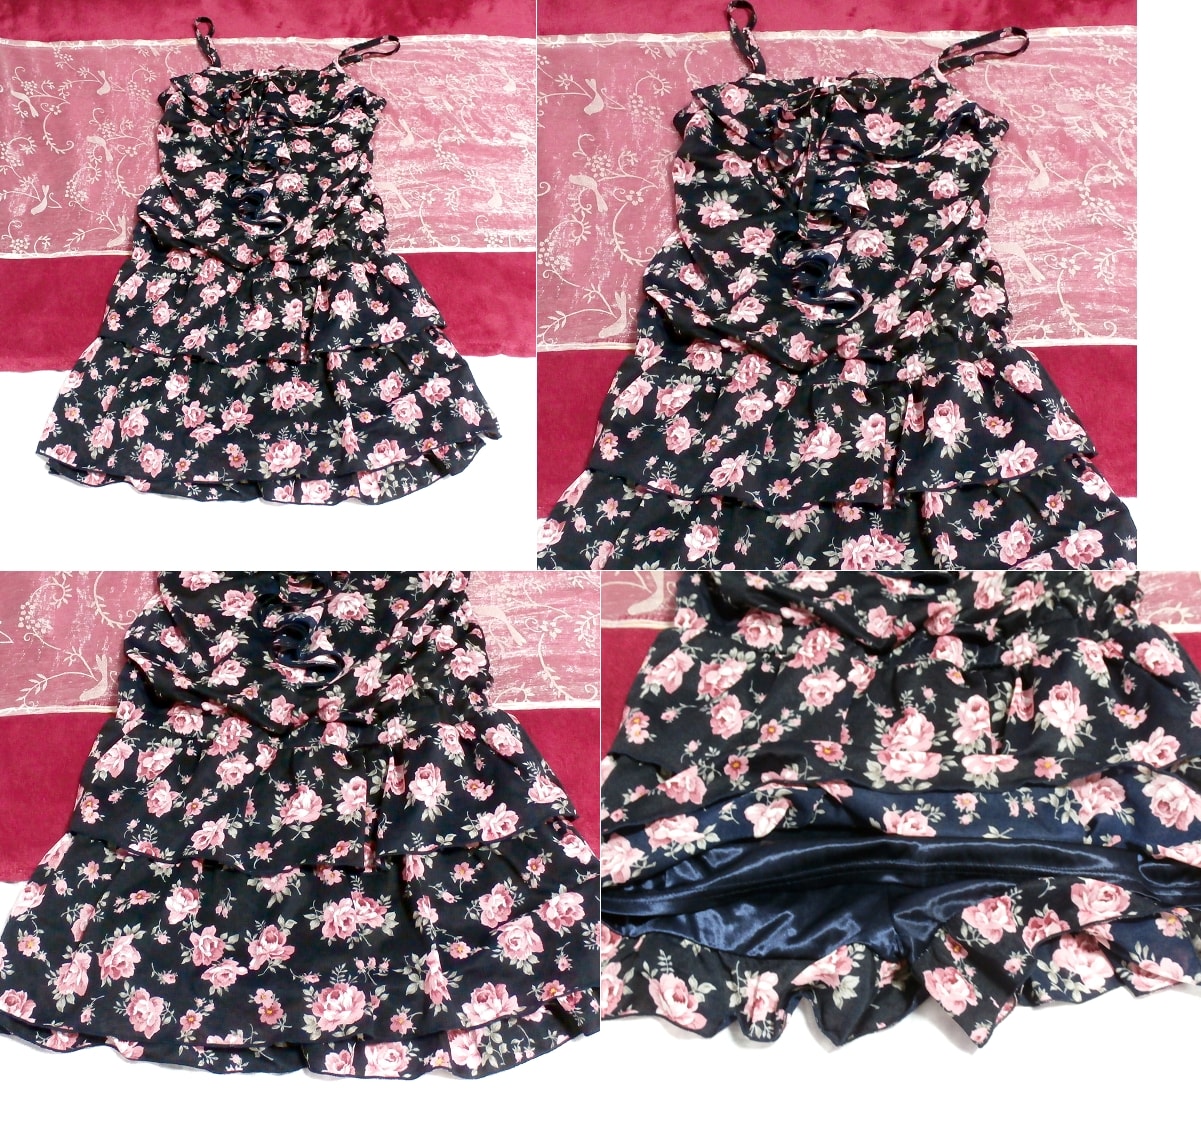 블랙 네이비 플로럴 패턴 캐미솔 시폰 네글리제 나이트가운 큐로트 드레스, 패션, 숙녀 패션, 캐미솔